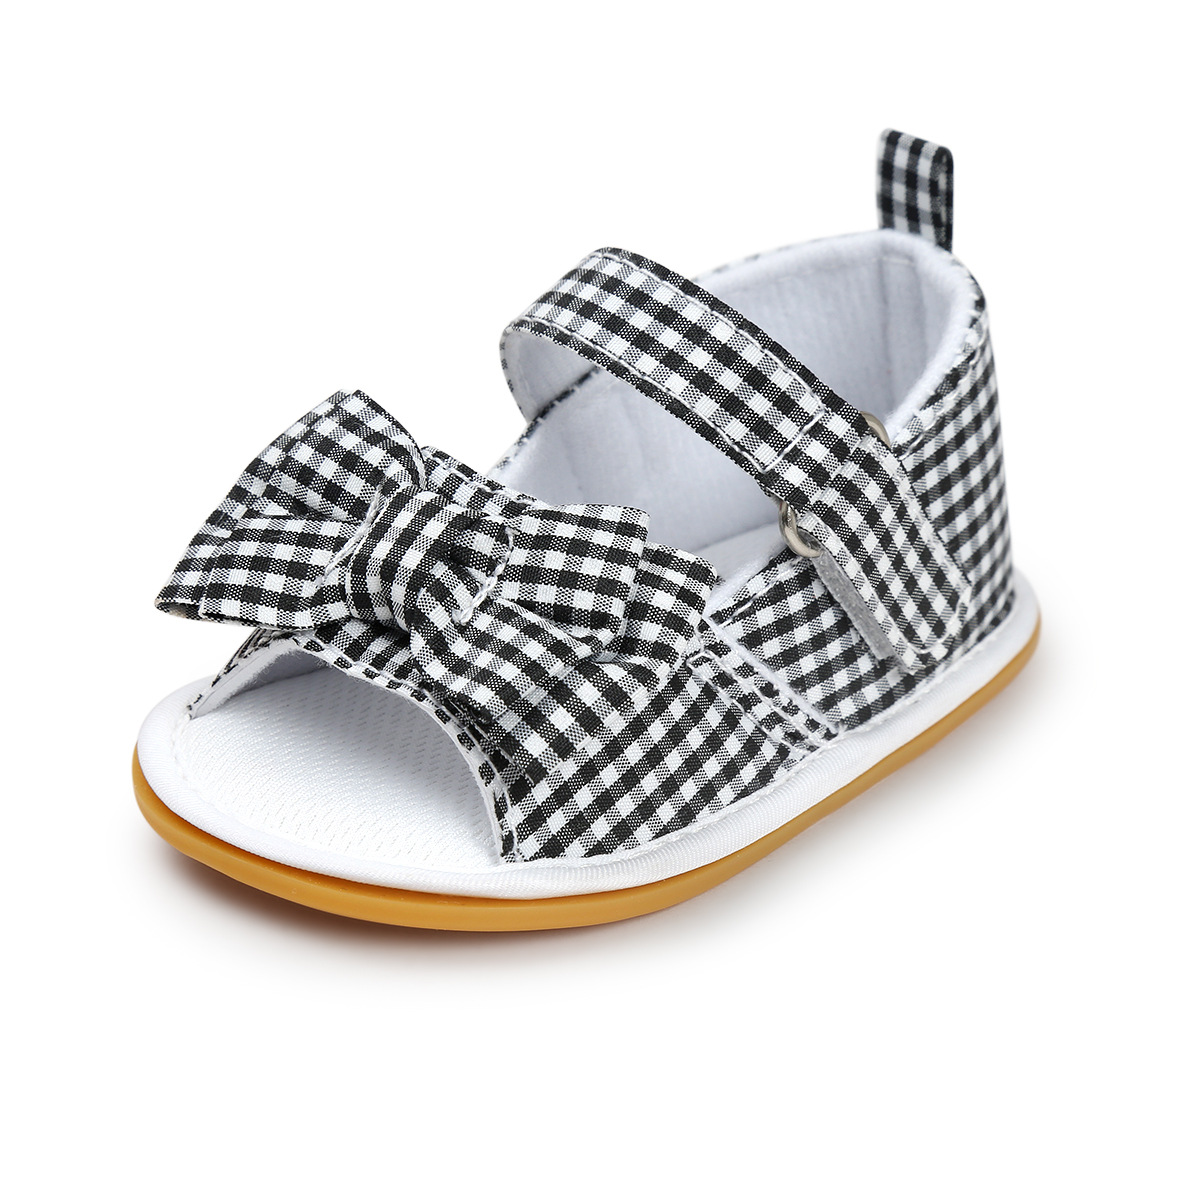 Chaussures bébé en coton - Ref 3436770 Image 56